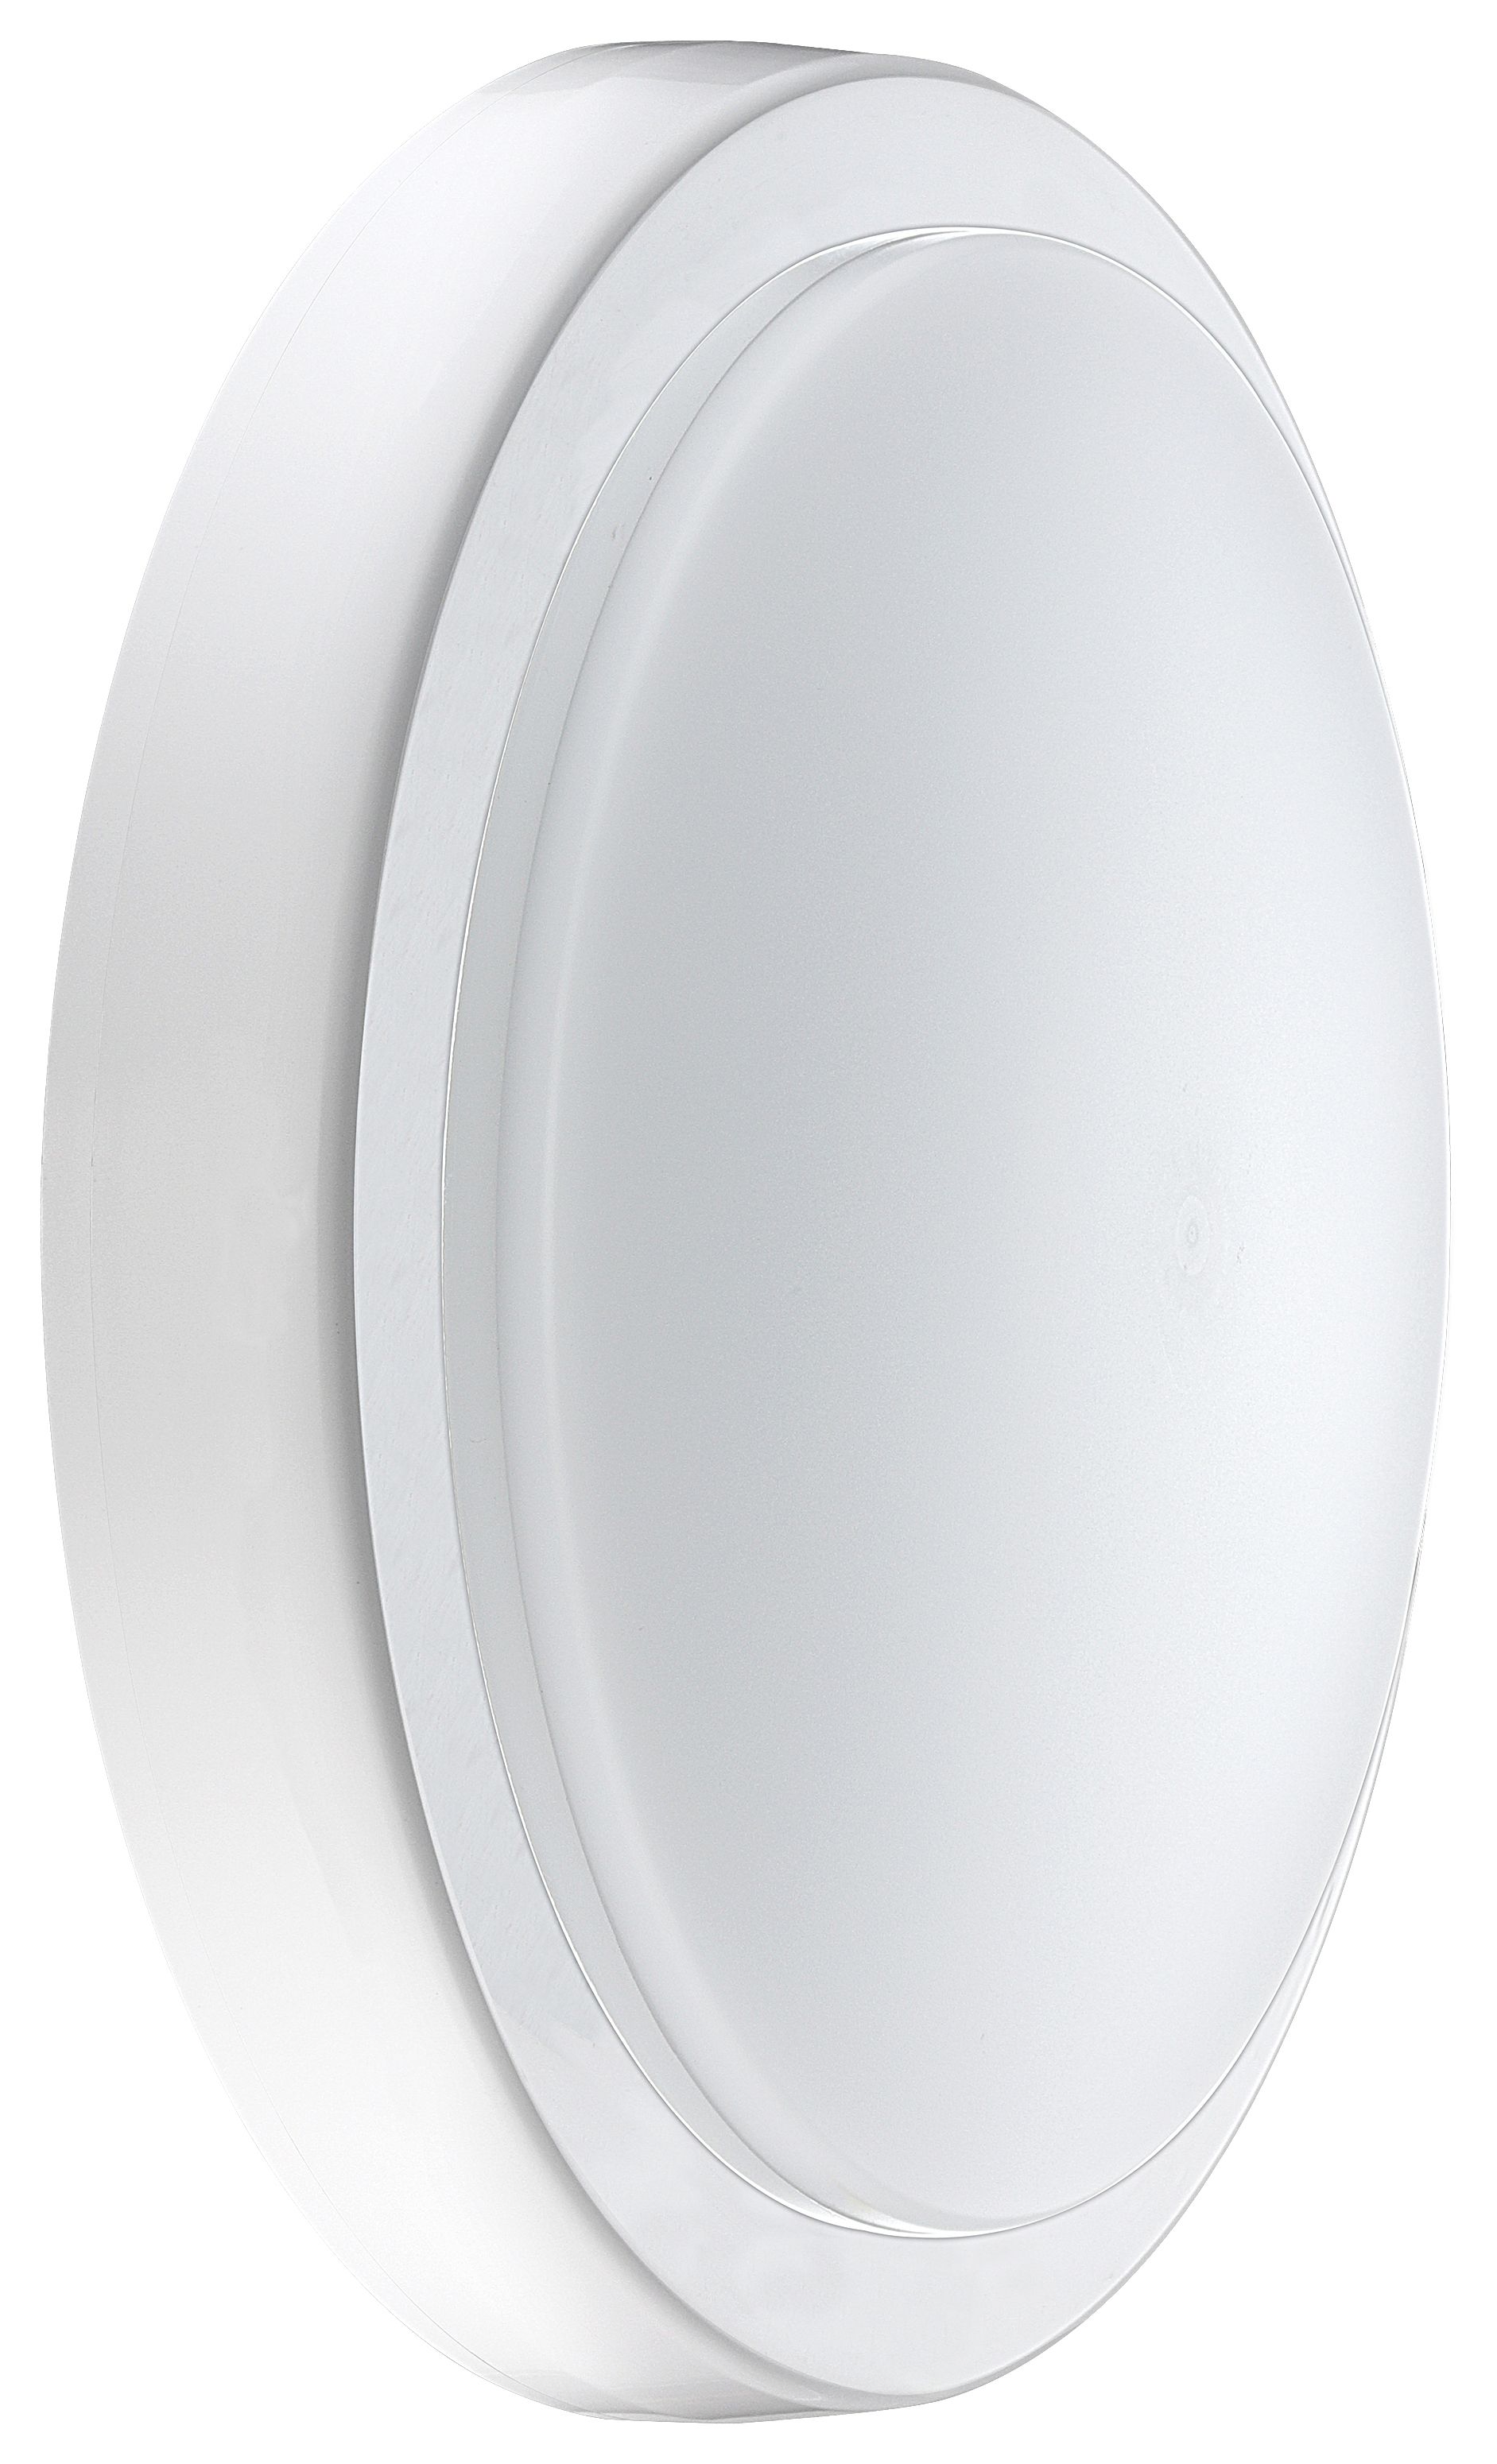 Luceco Decorative Indoor IP54 Bulkhead 220mm 1300LM 14W Colour Change White & Chrome Bezel